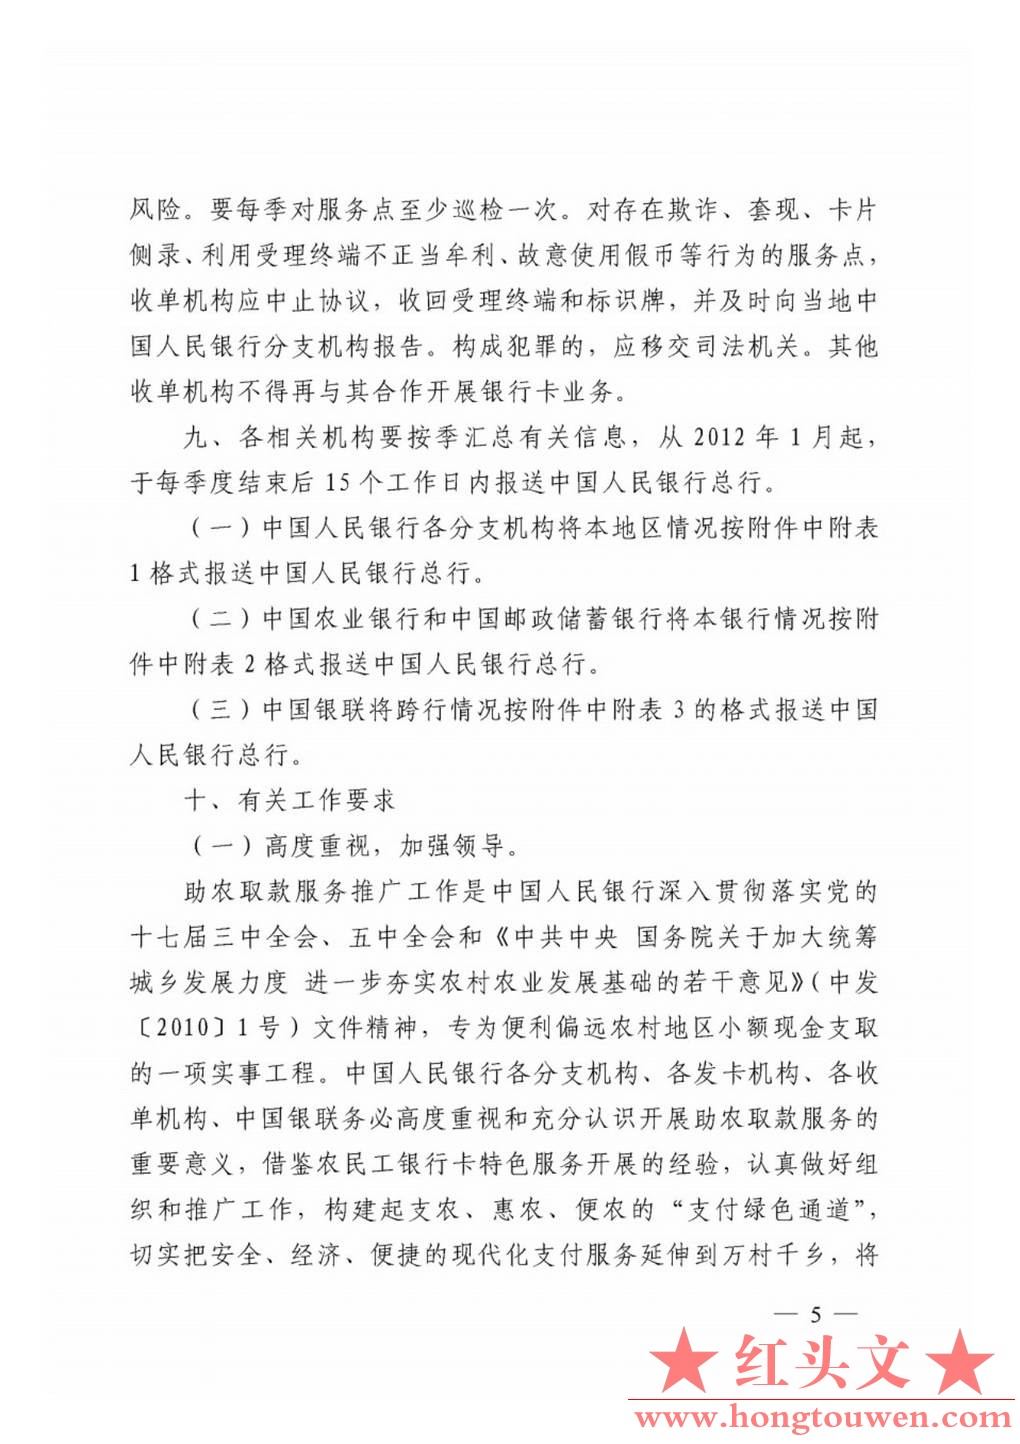 银发[2011]177号-中国人民银行关于推广银行卡助农取款服务的通知_Page5.jpg.jpg